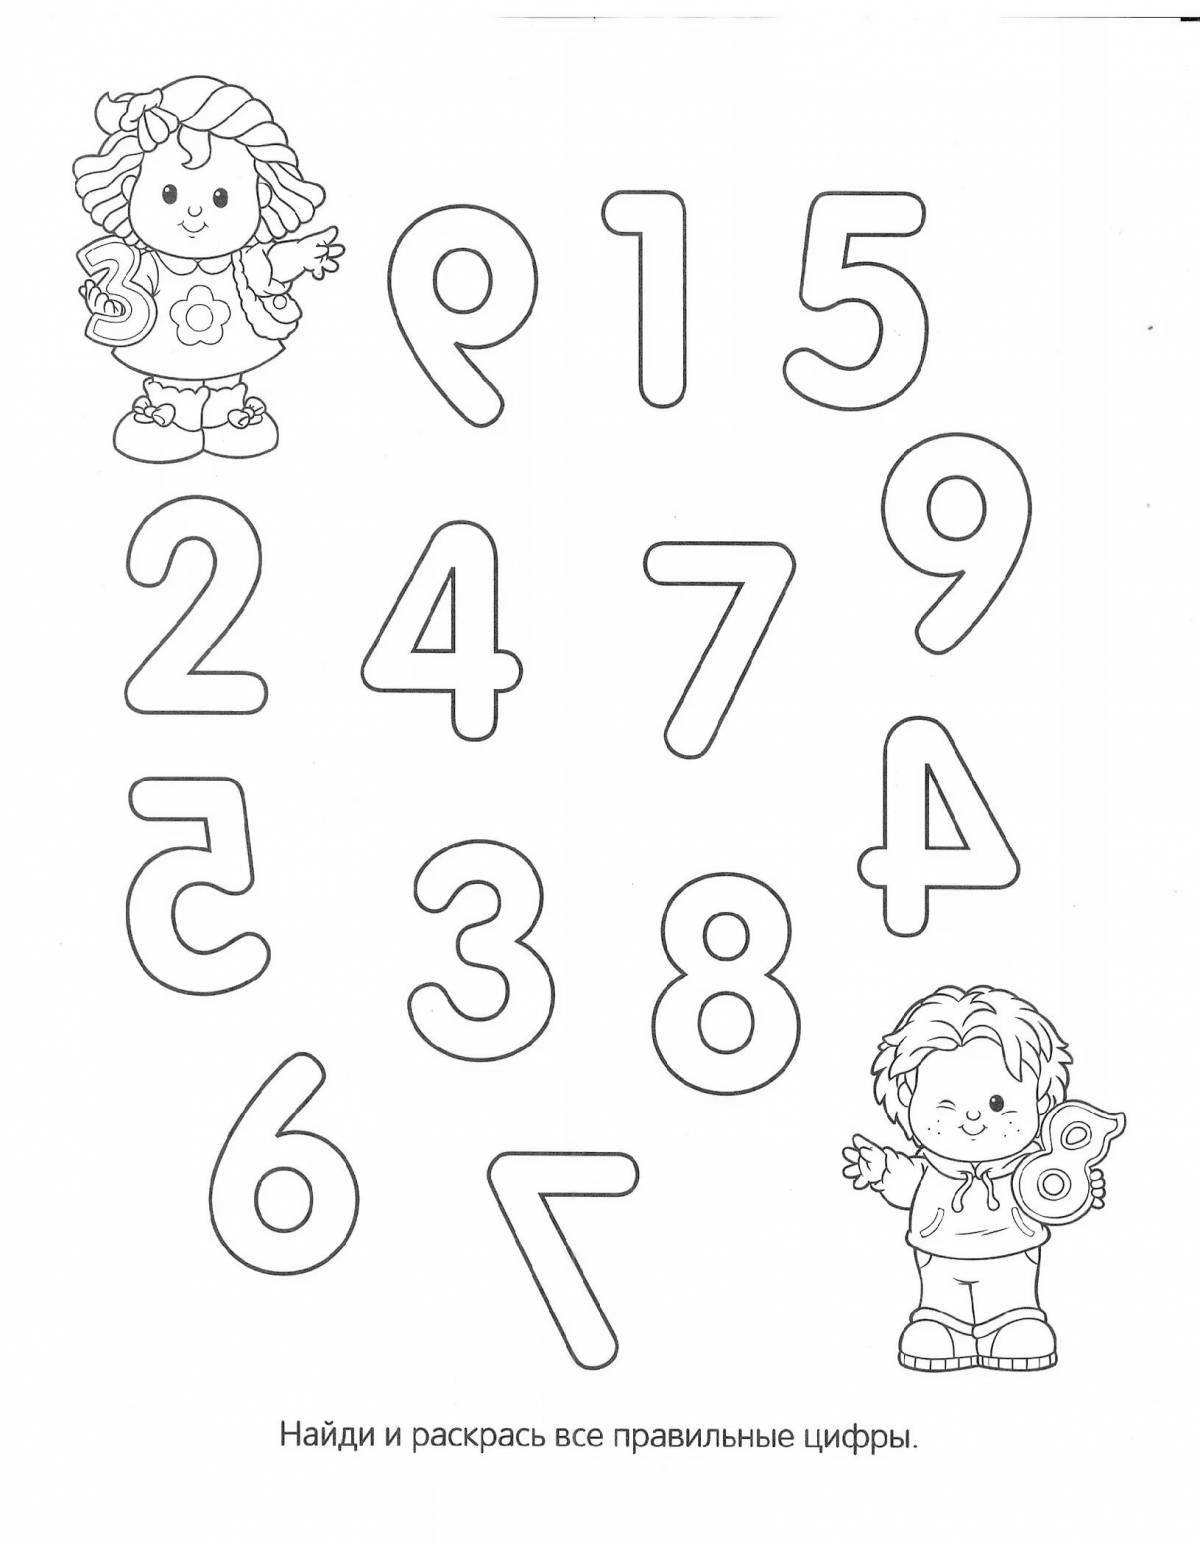 Инновационная раскраска с буквами и цифрами для дошкольников